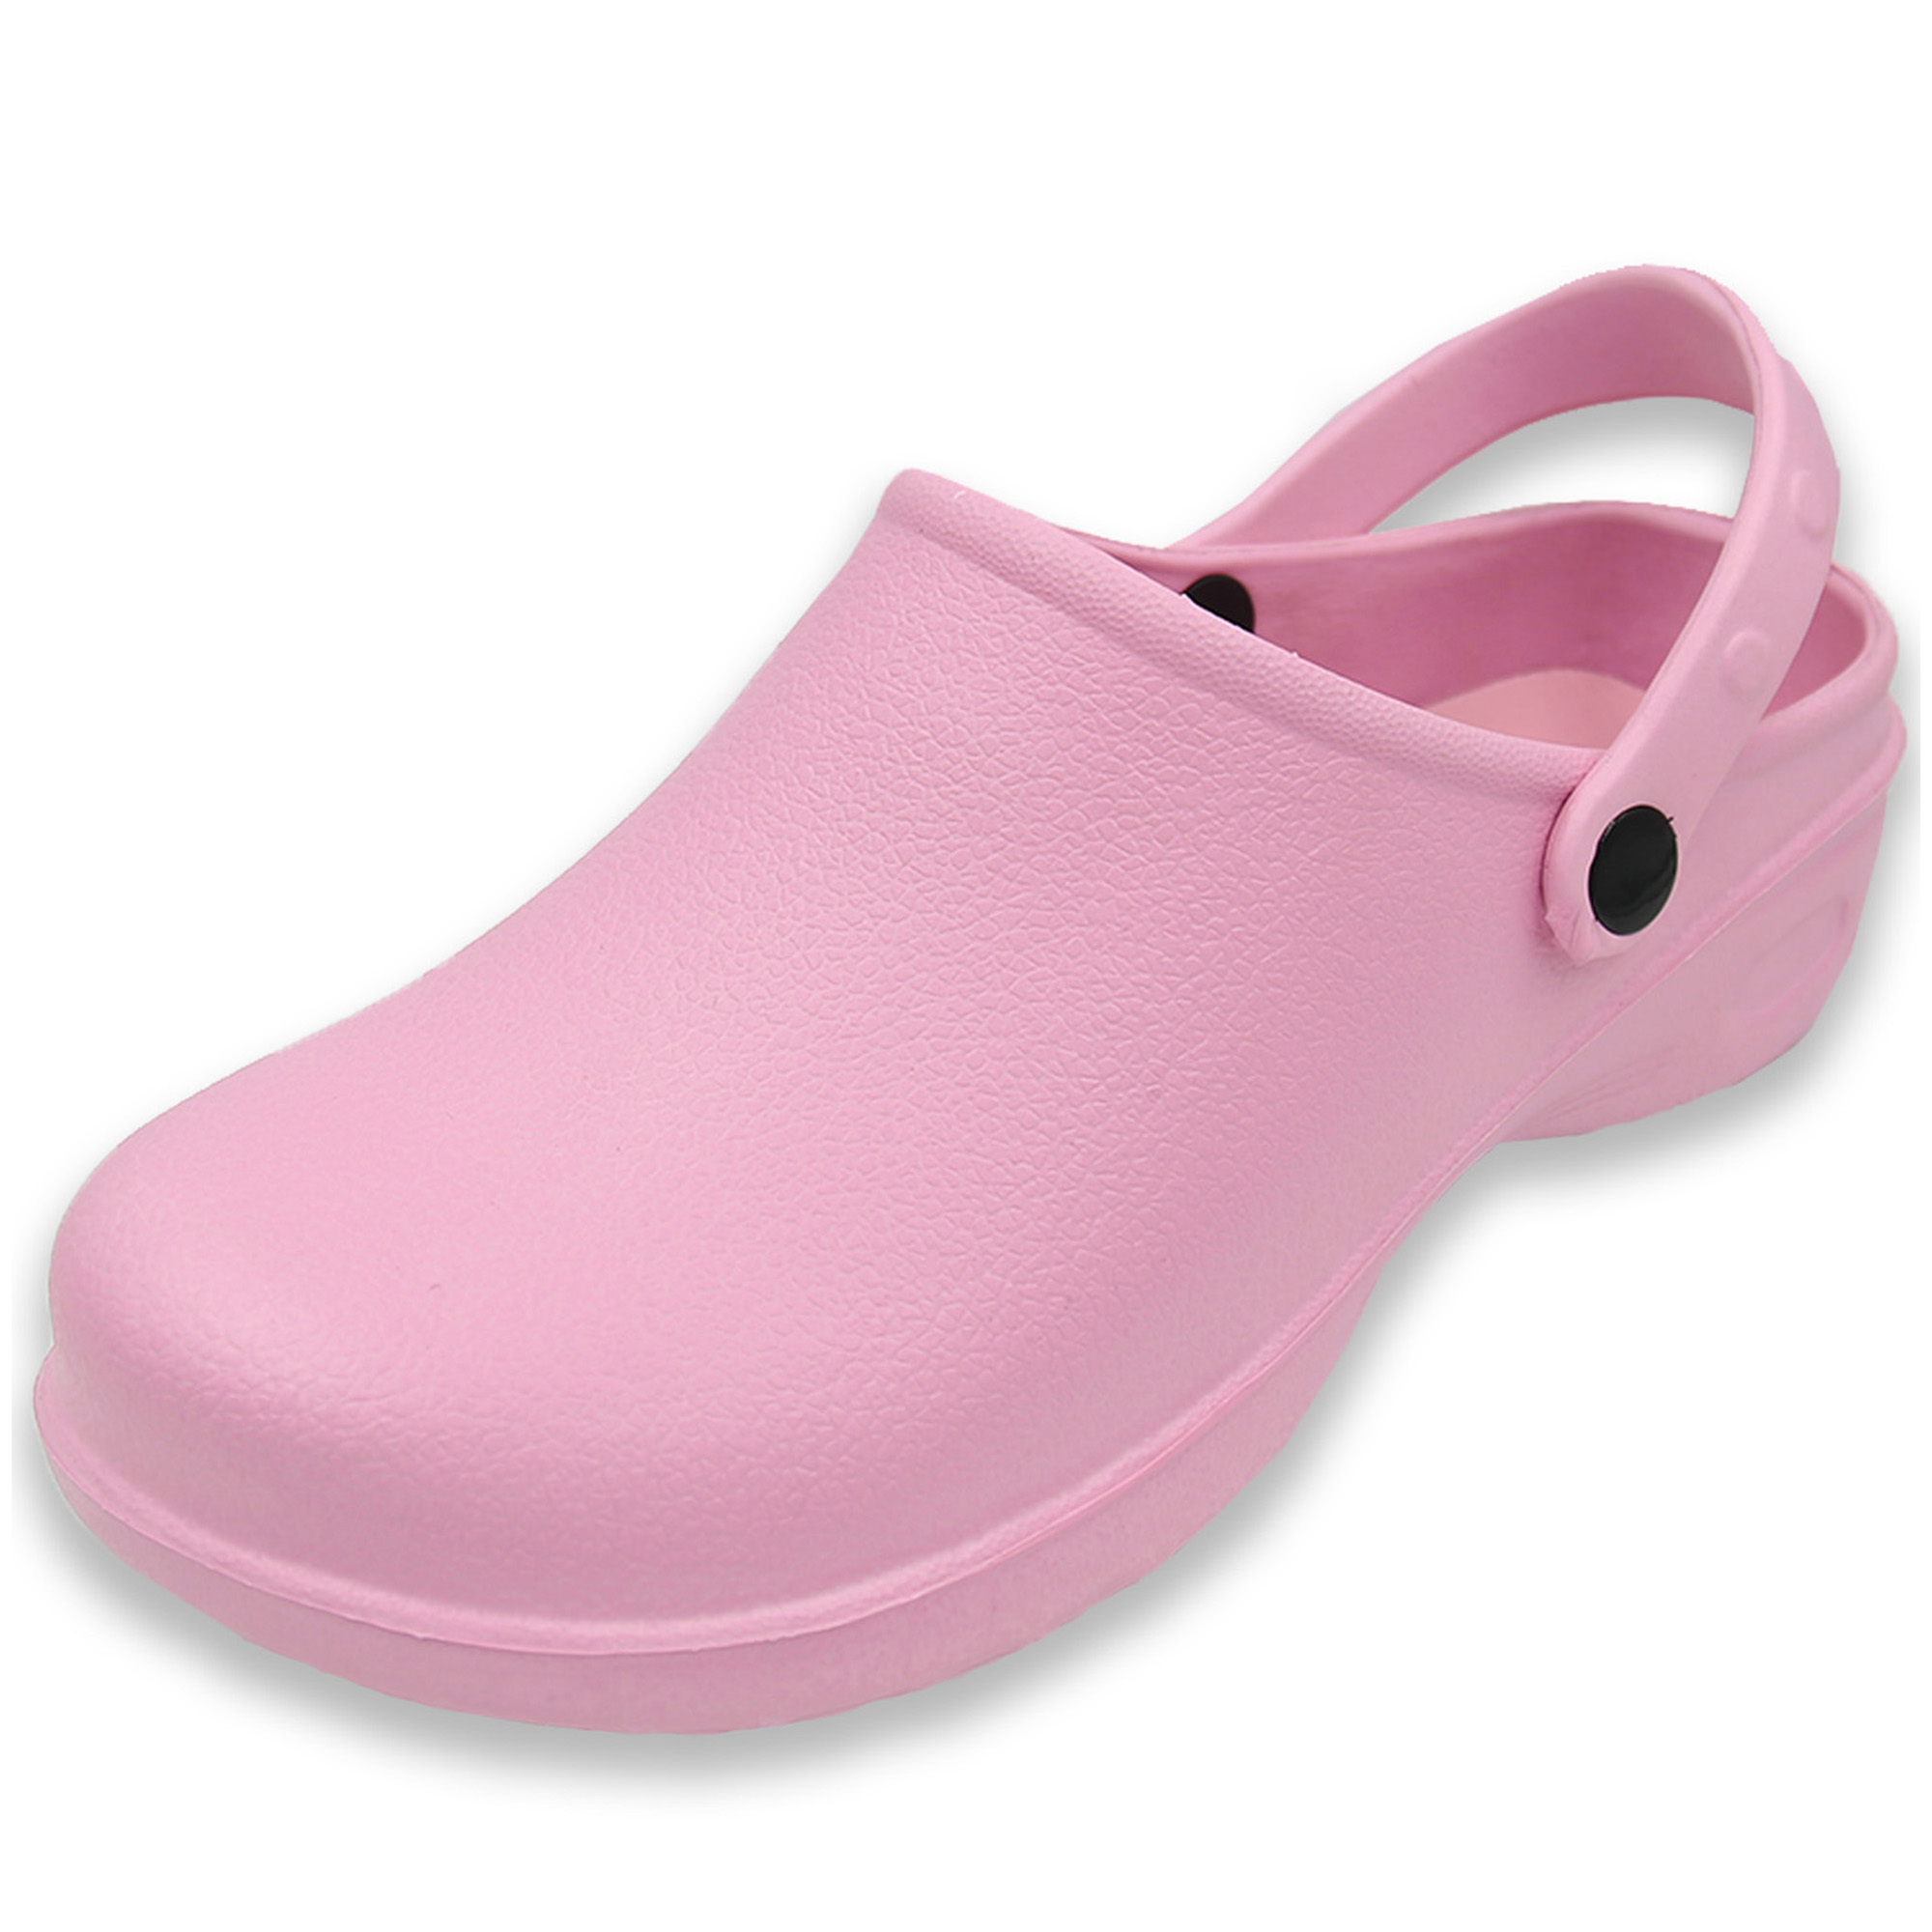 Women's Garden Clogs Nursing Shoes - Lightweight Slip-On Water Beach ...